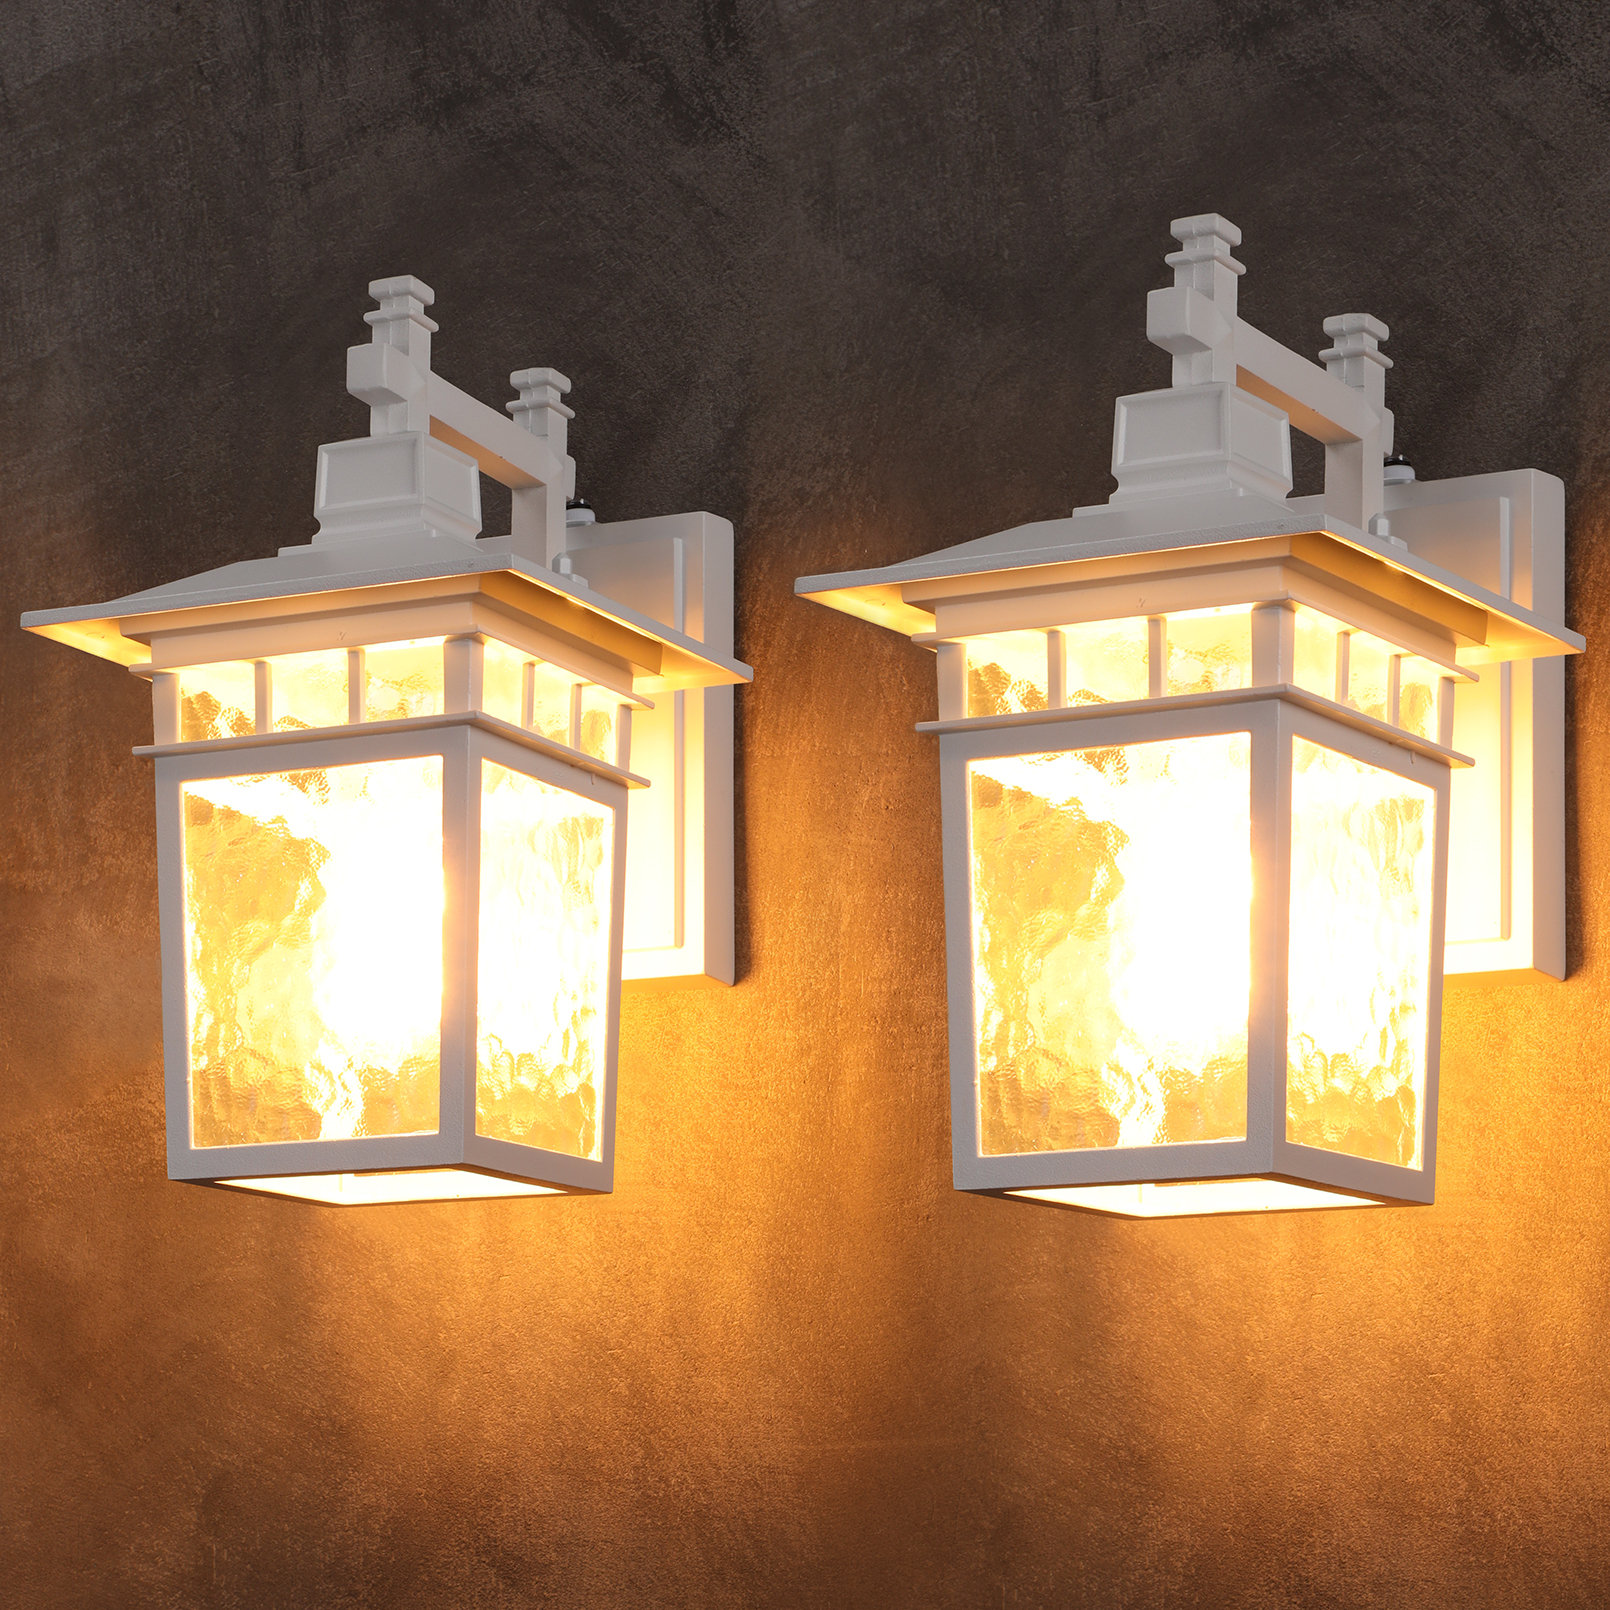 https://assets.wfcdn.com/im/22058820/compr-r85/2416/241624283/depace-dusk-to-dawn-sensor-wall-lantern-outdoor-porch-light-e26-bulbs-compatible-ul-listed.jpg